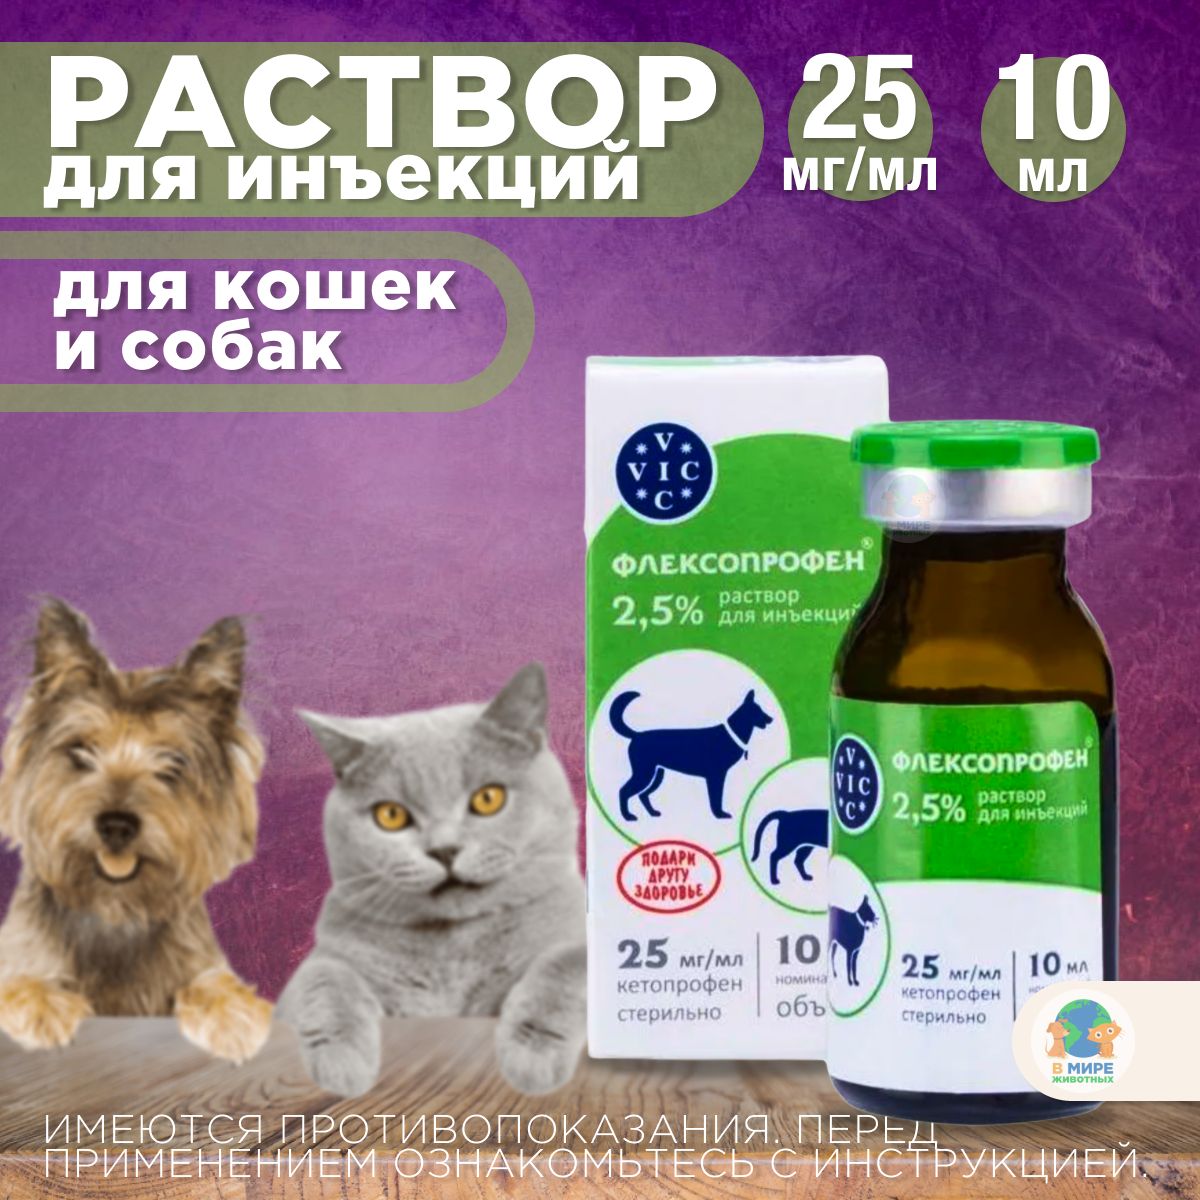 Флексопрофен для собак применение. Флексопрофен для кошек. Флексопрофен 0,4 мл. Парацетамол для инъекций. Парацетамол в ампулах для инъекций купить.